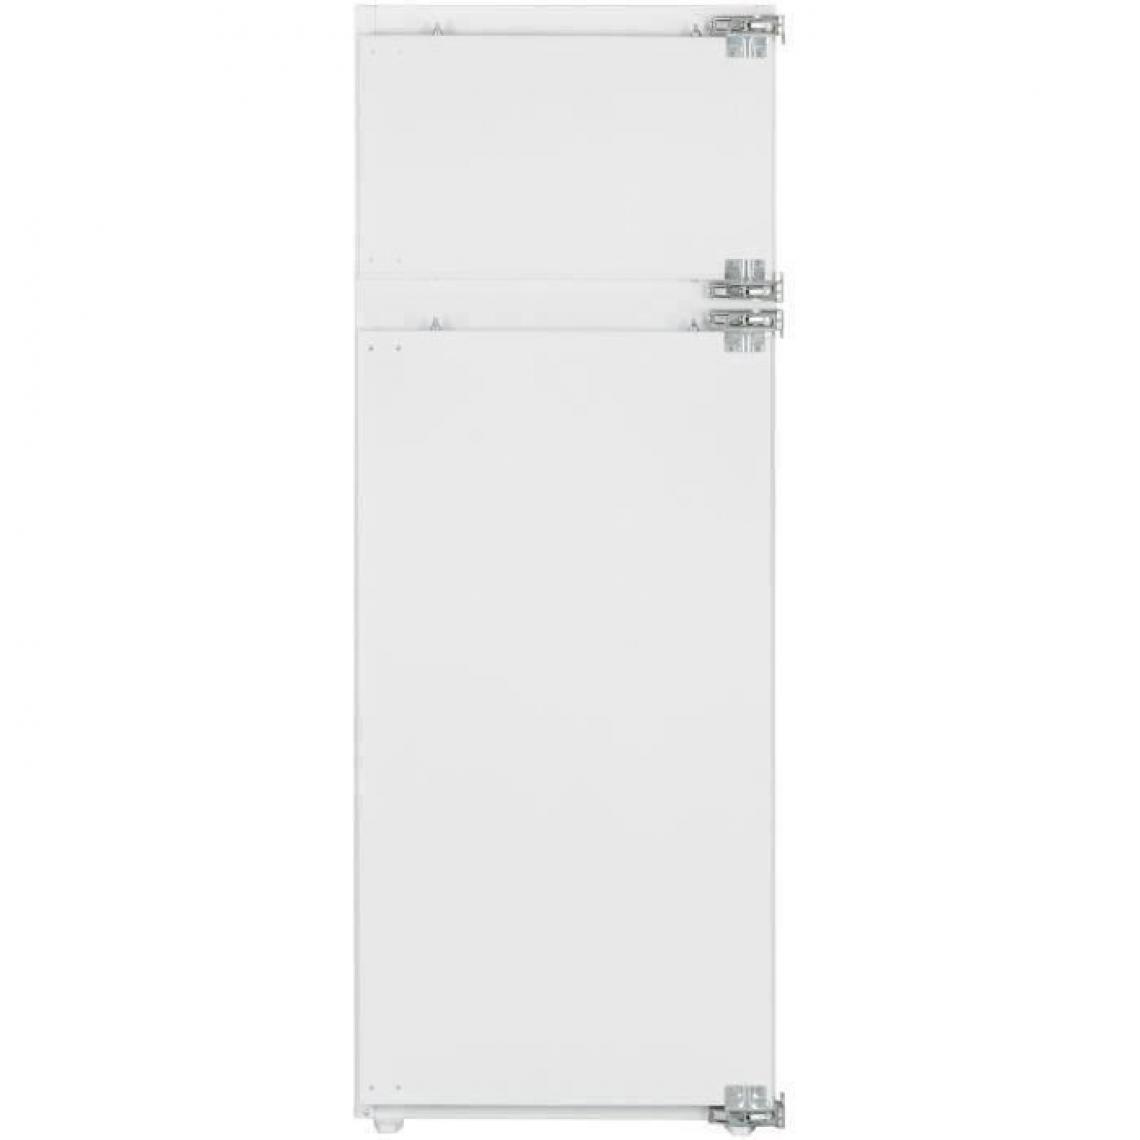 Sharp - Réfrigérateur congélateur haut encastrable - SJ-TE214M1X - 214L (176+38) - Froid Statique - A++ - L 54cm x H 144.5cm - Réfrigérateur